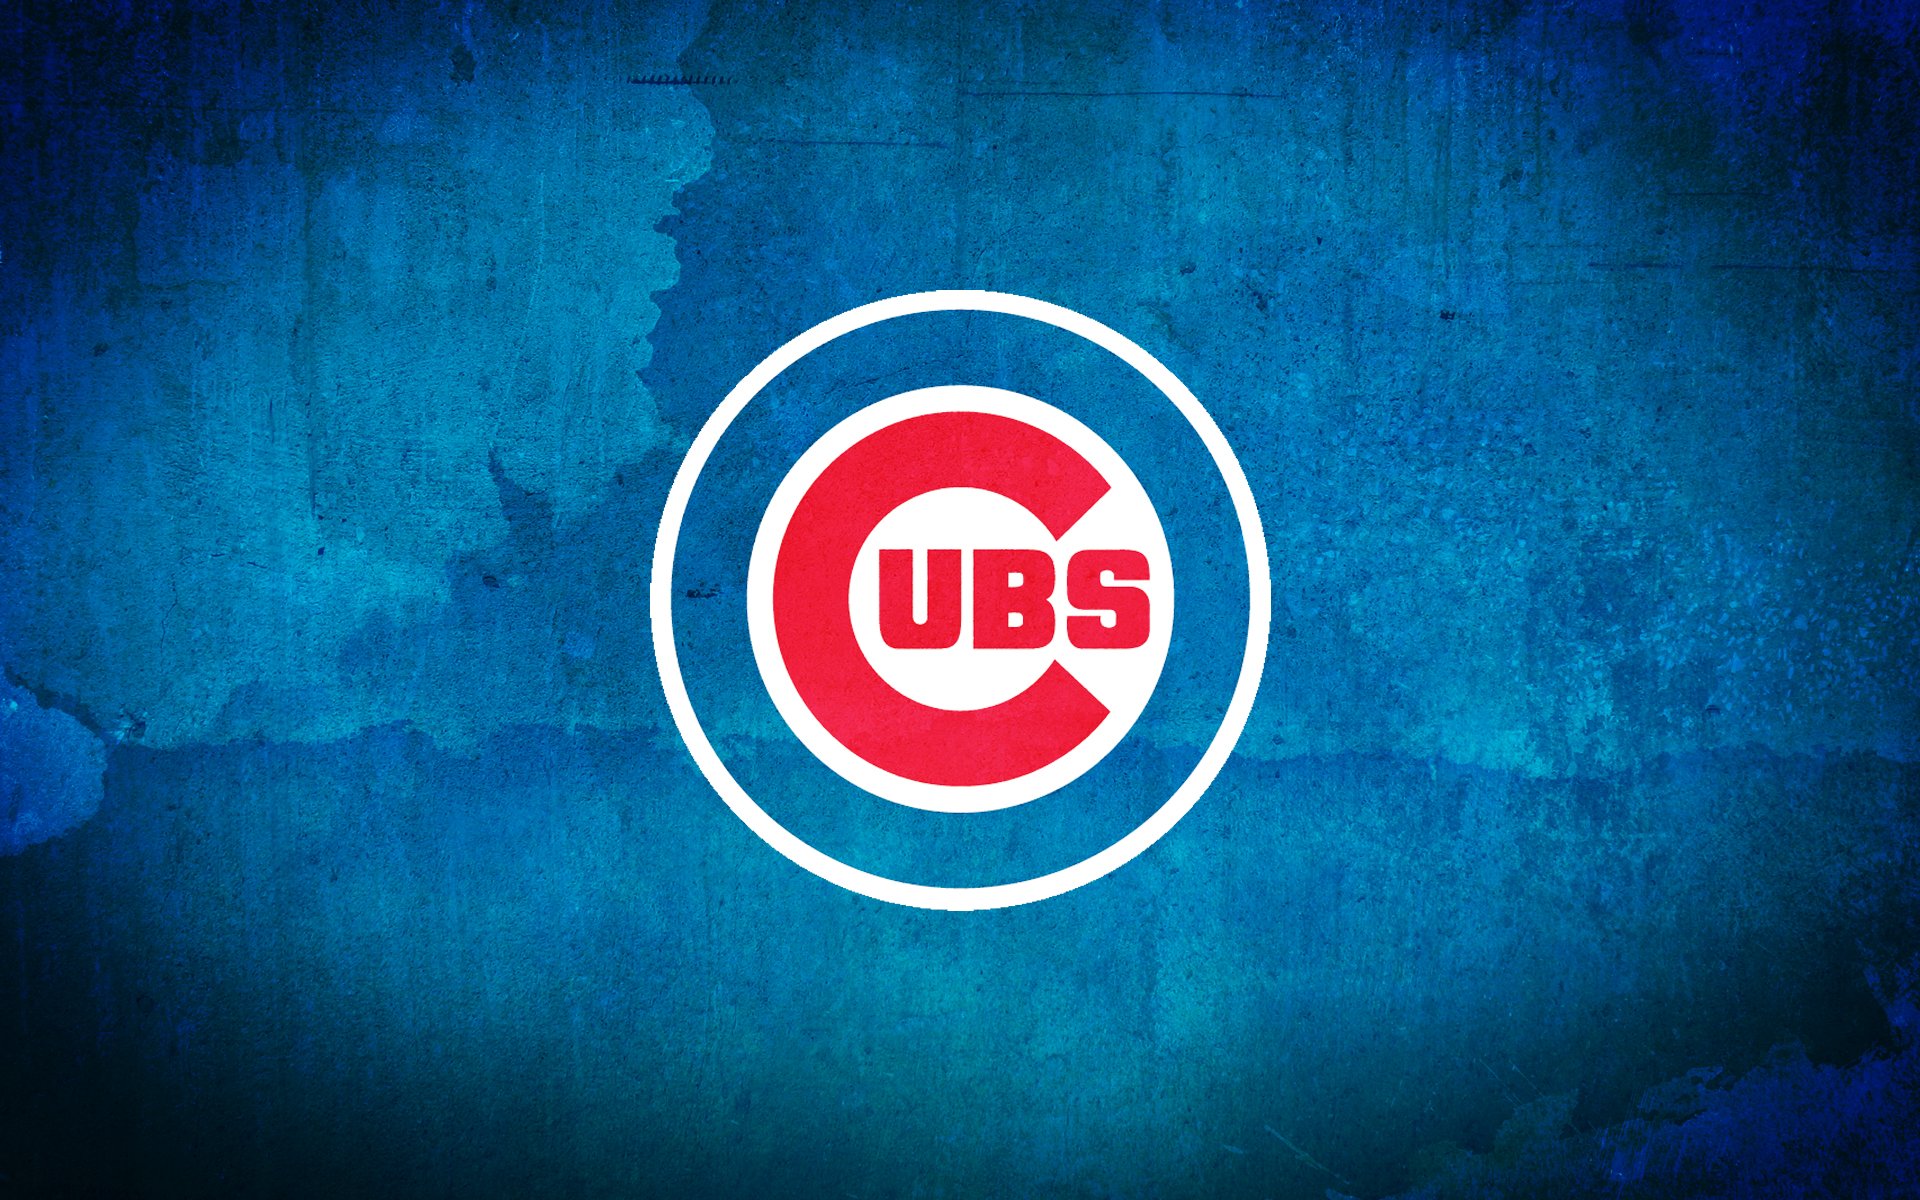 Chicago Cubs 1920 x 1200 1024 x 640 1920x1200